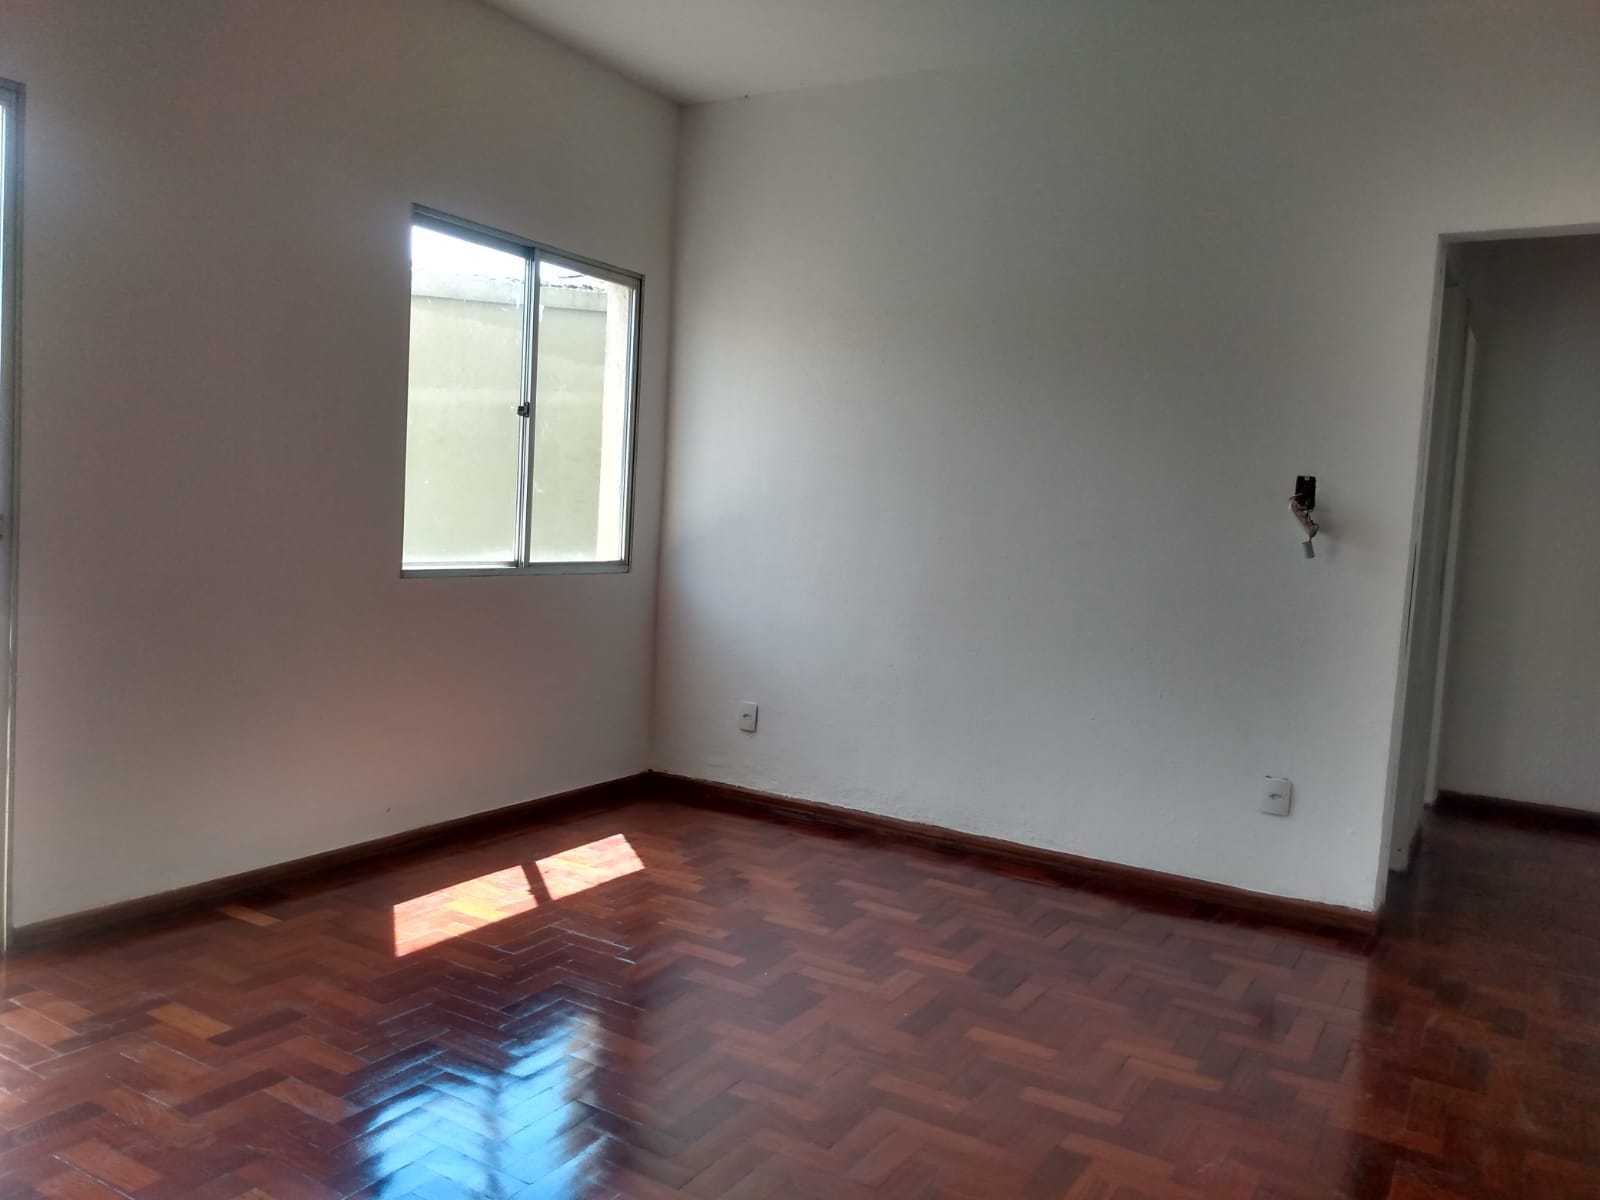 Apartamento, 3 quartos, 45 m² - Foto 2